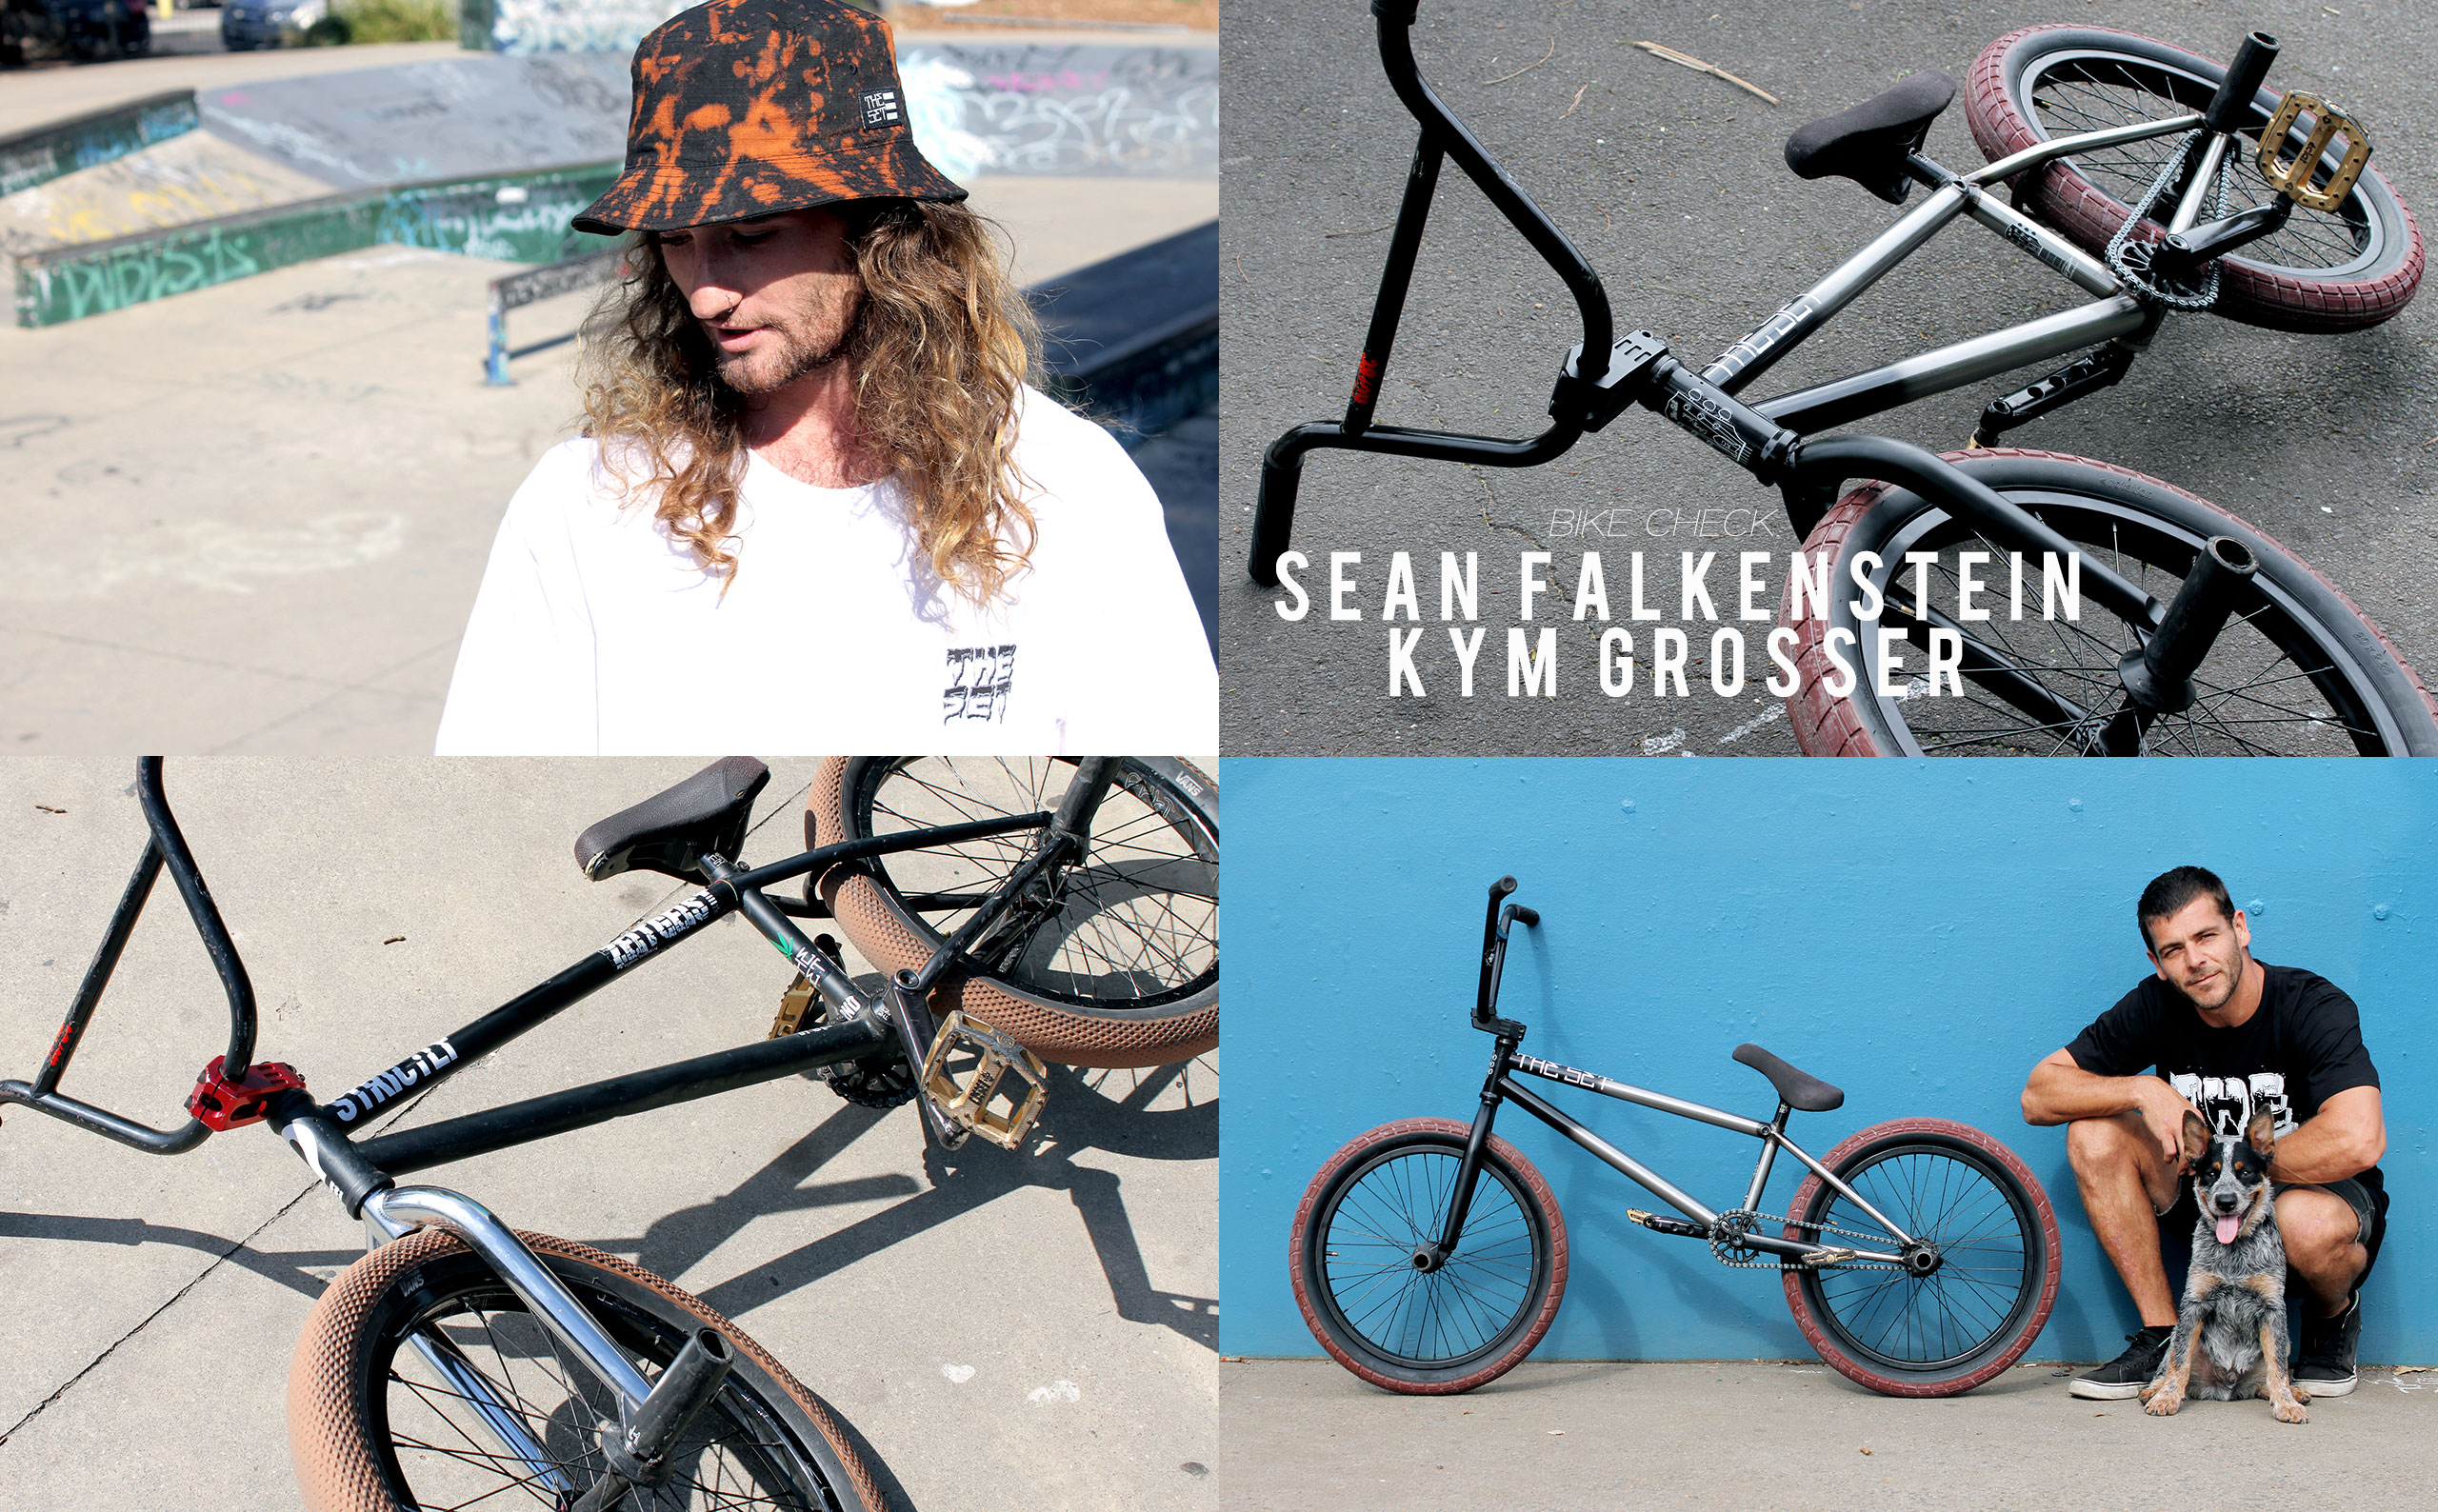 Bike Check – Kym Grosser & Sean Falkenstein